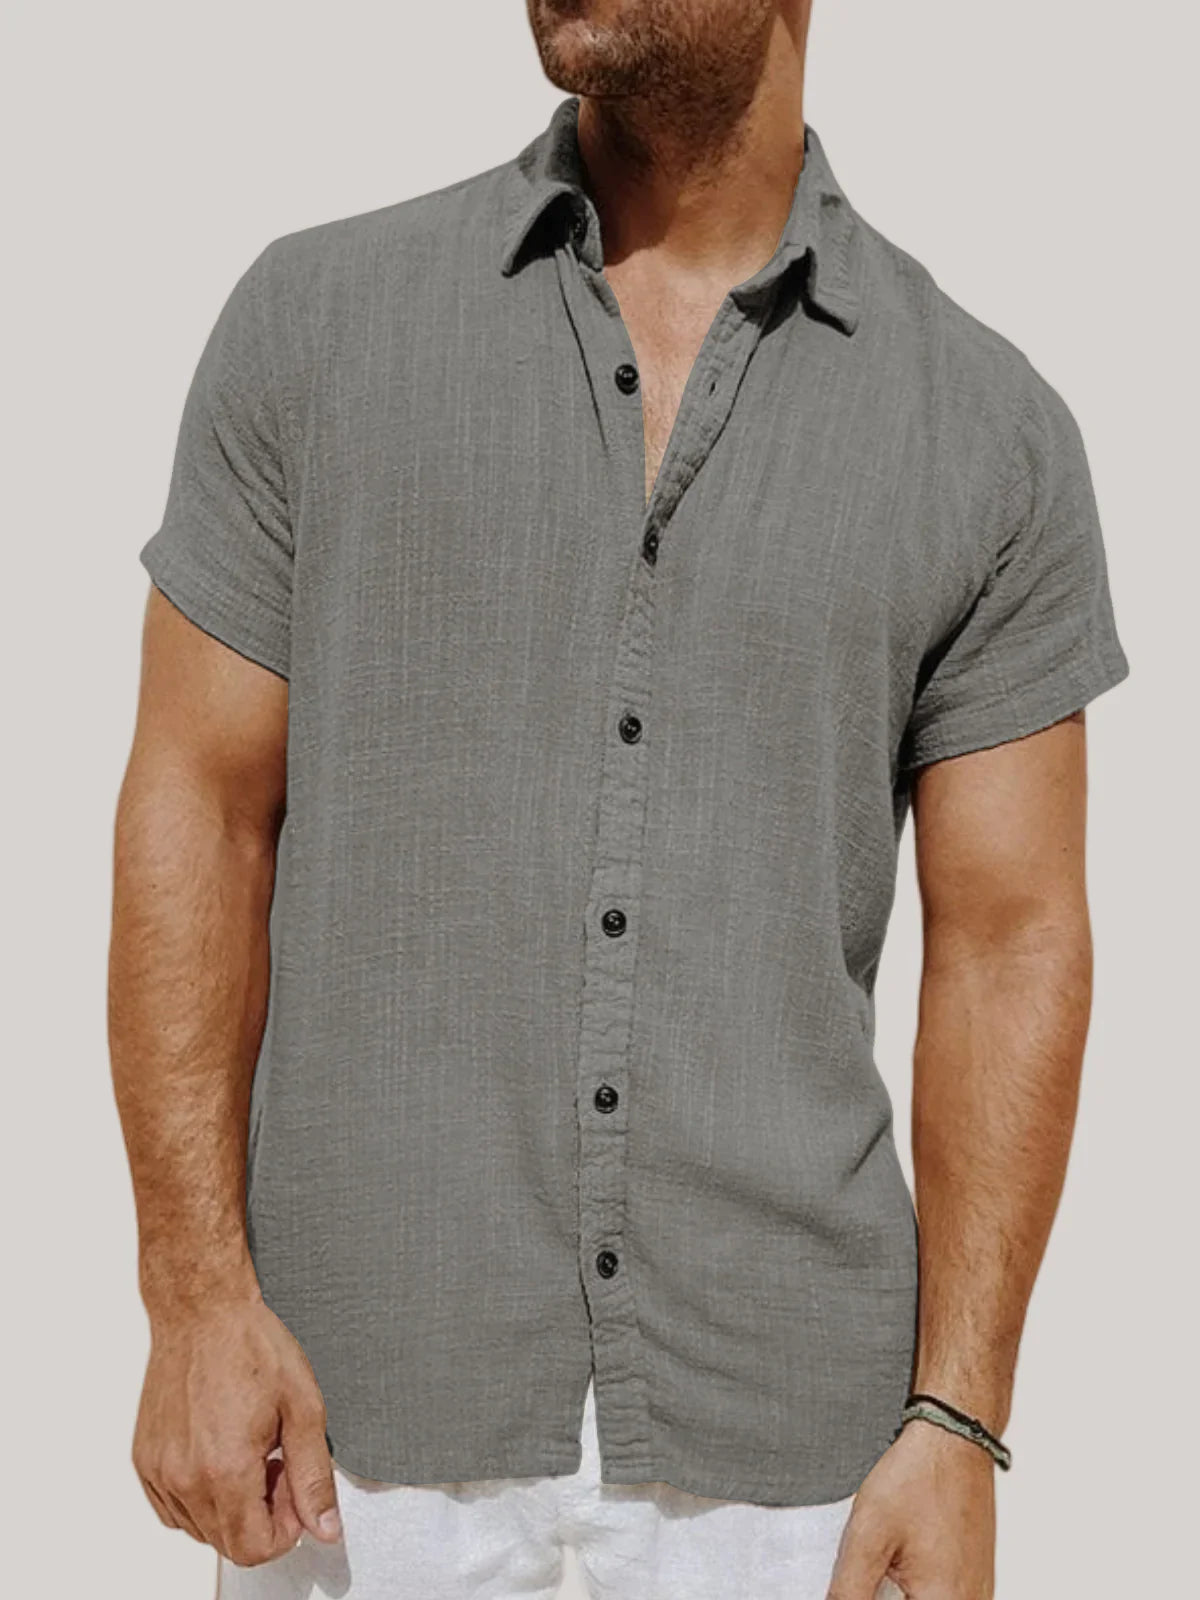 Oisin - Stylisches Leinen Hemd für Männer